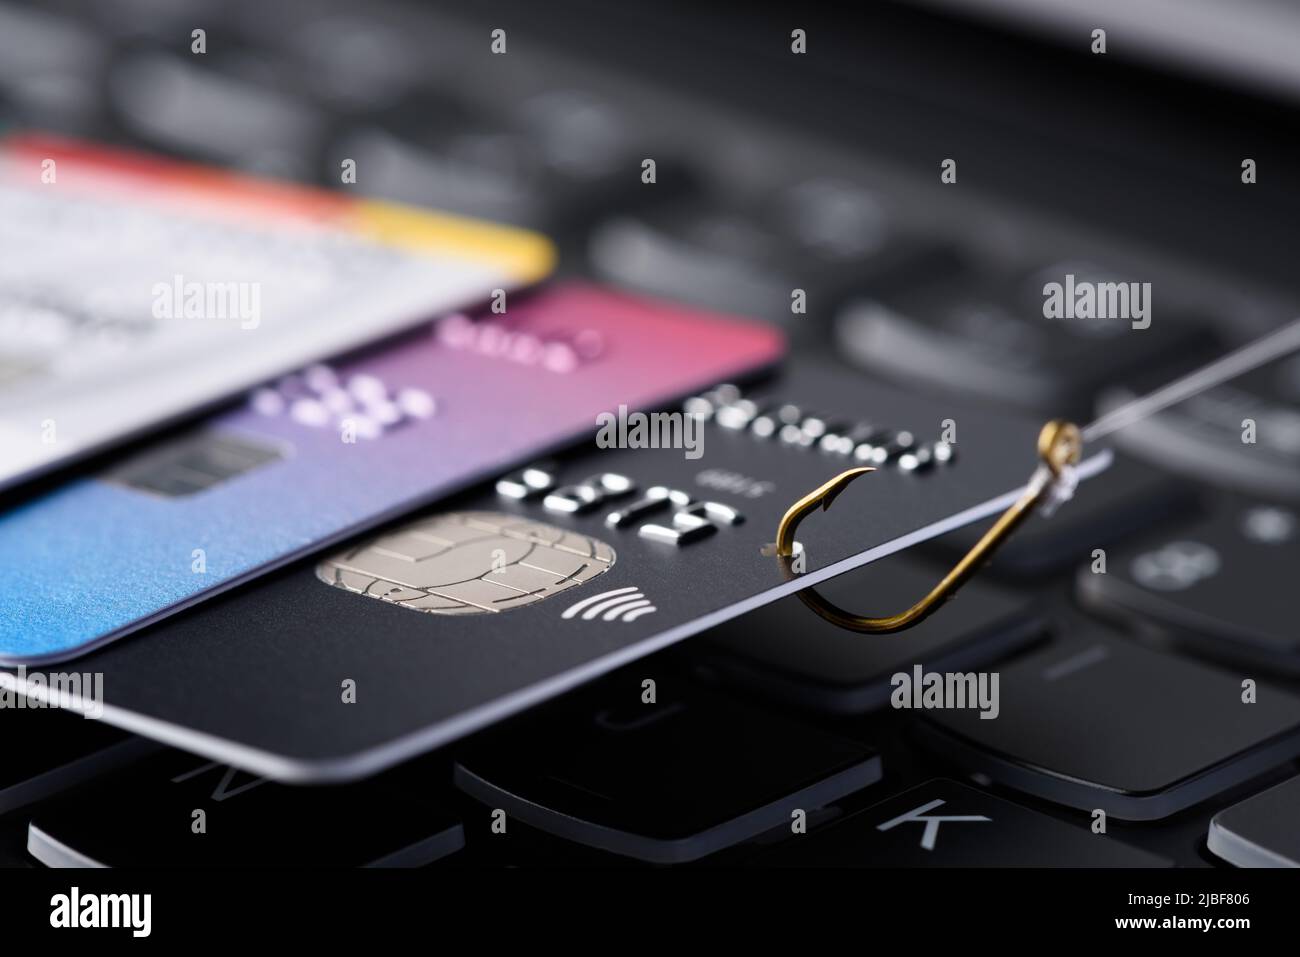 Konzept für Phishing-Betrug mit Kreditkarte. Kreditkartendatendiebstahl, Karte auf Angelhaken eingehakt, gezogen aus dem Stapel anderer Karten auf der Tastatur. Stockfoto